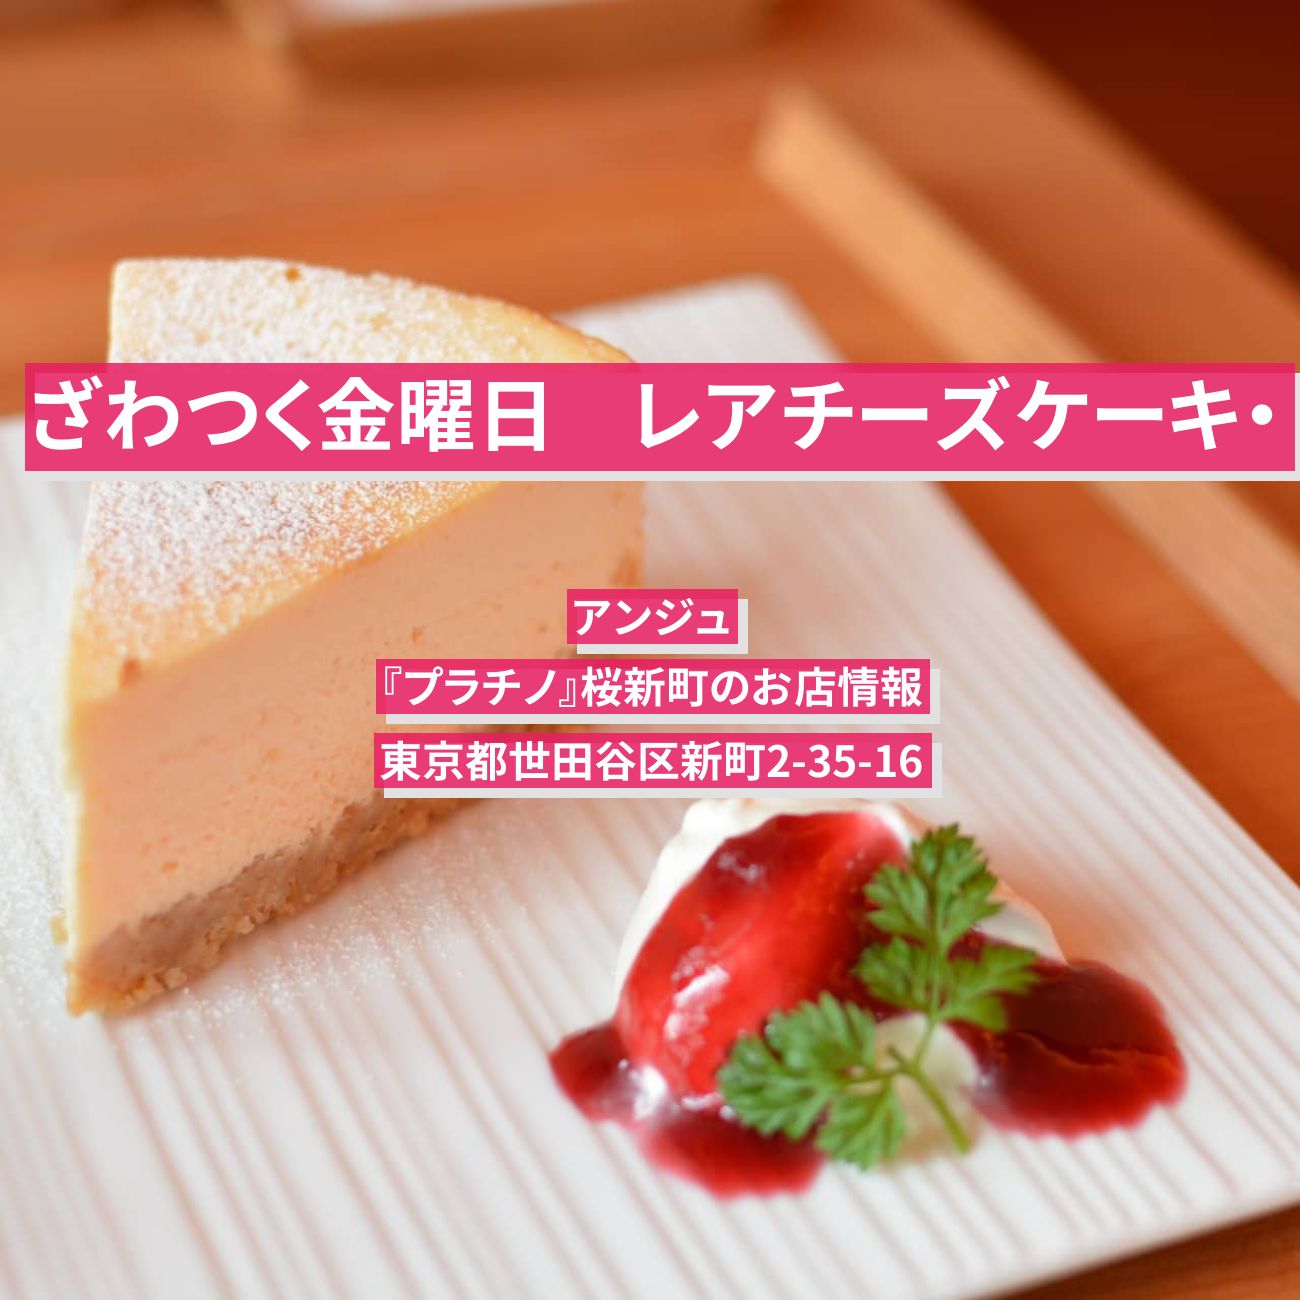 【ざわつく金曜日】レアチーズケーキ・アンジュ『プラチノ』桜新町のお店情報